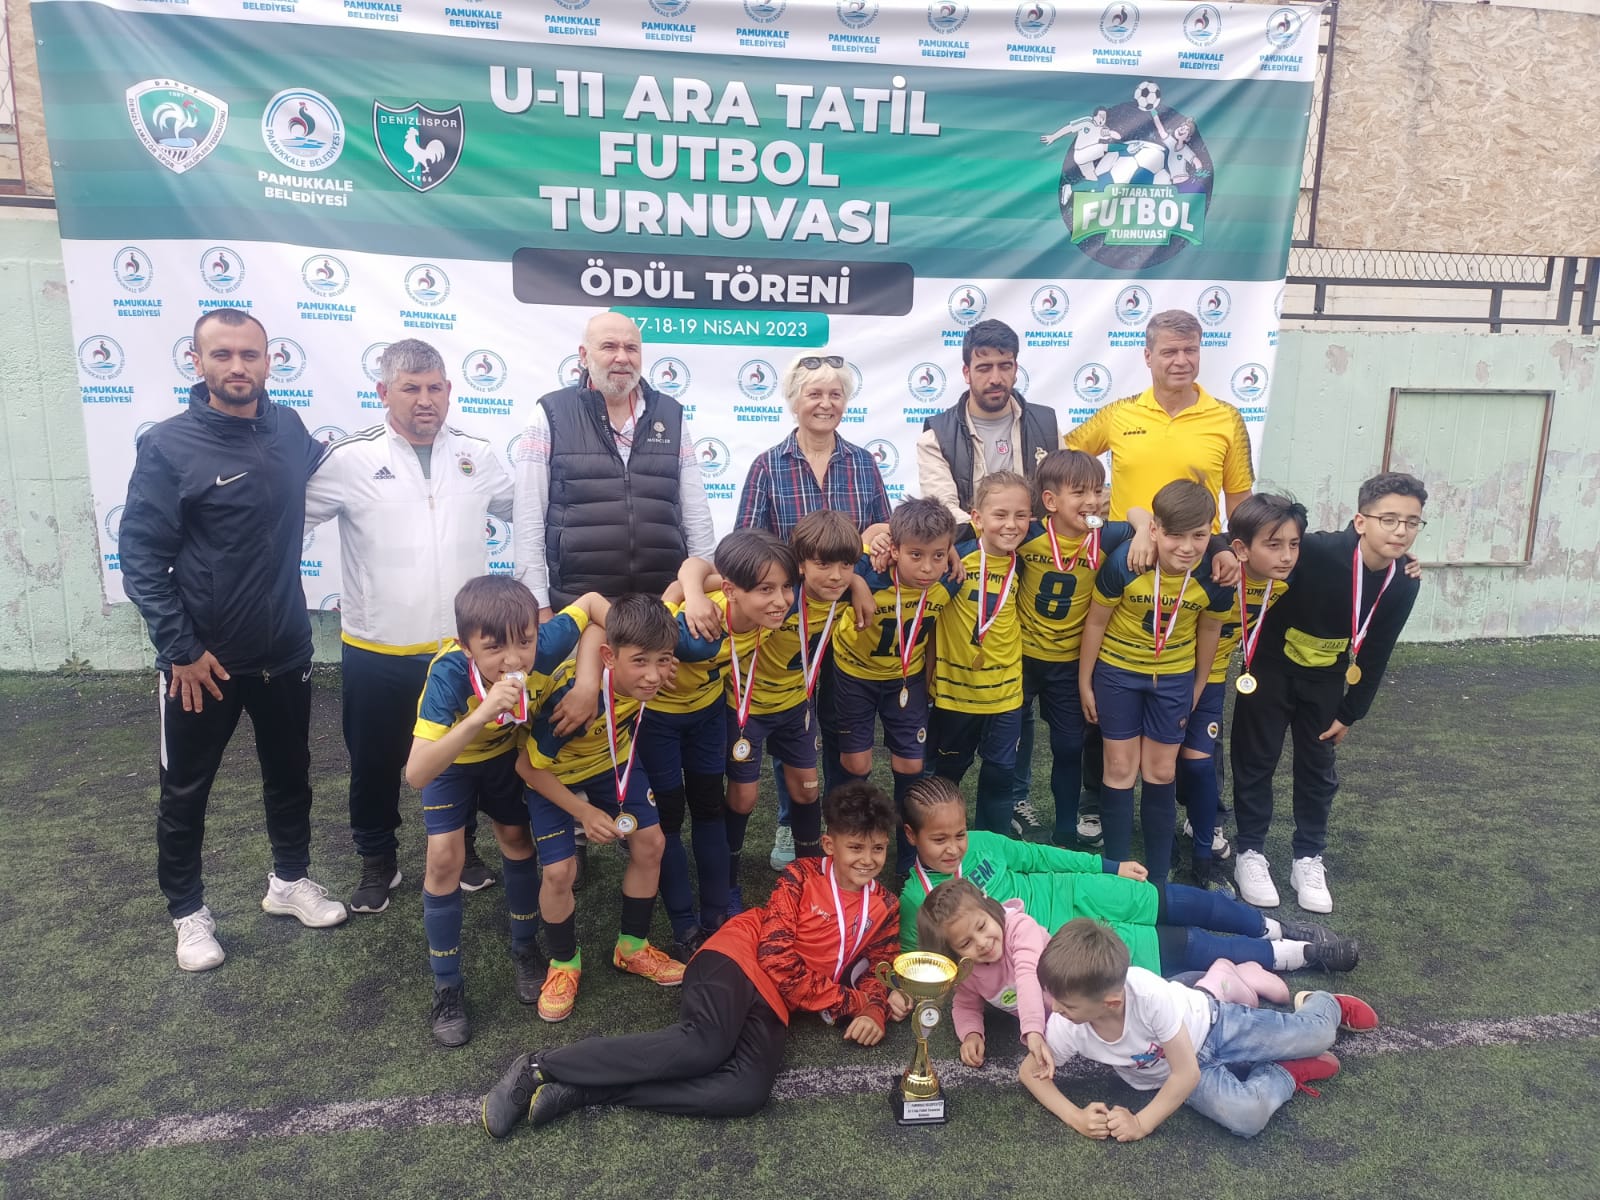 Pamukkale Belediyesinin 2022-2023 eğitim öğretim yılının ara tatilinde düzenlediği “U-11 Ara Tatil Futbol Turnuvası” sonuçlandı. 22 takımın katıldığı turnuvada Genç Ümitler takımı şampiyon oldu.